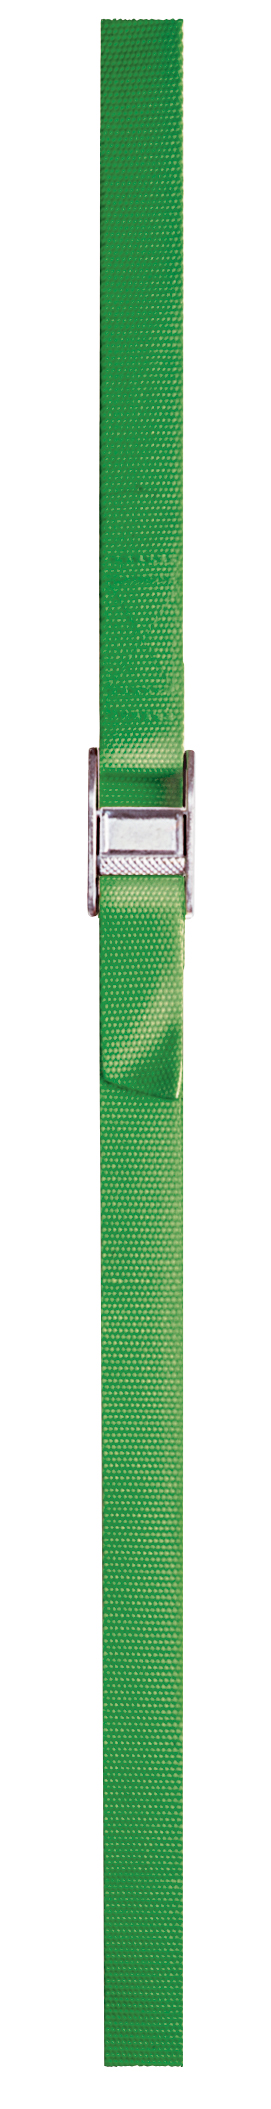 WS06 - 6' Green Nylon Web Strap - LH Dottie